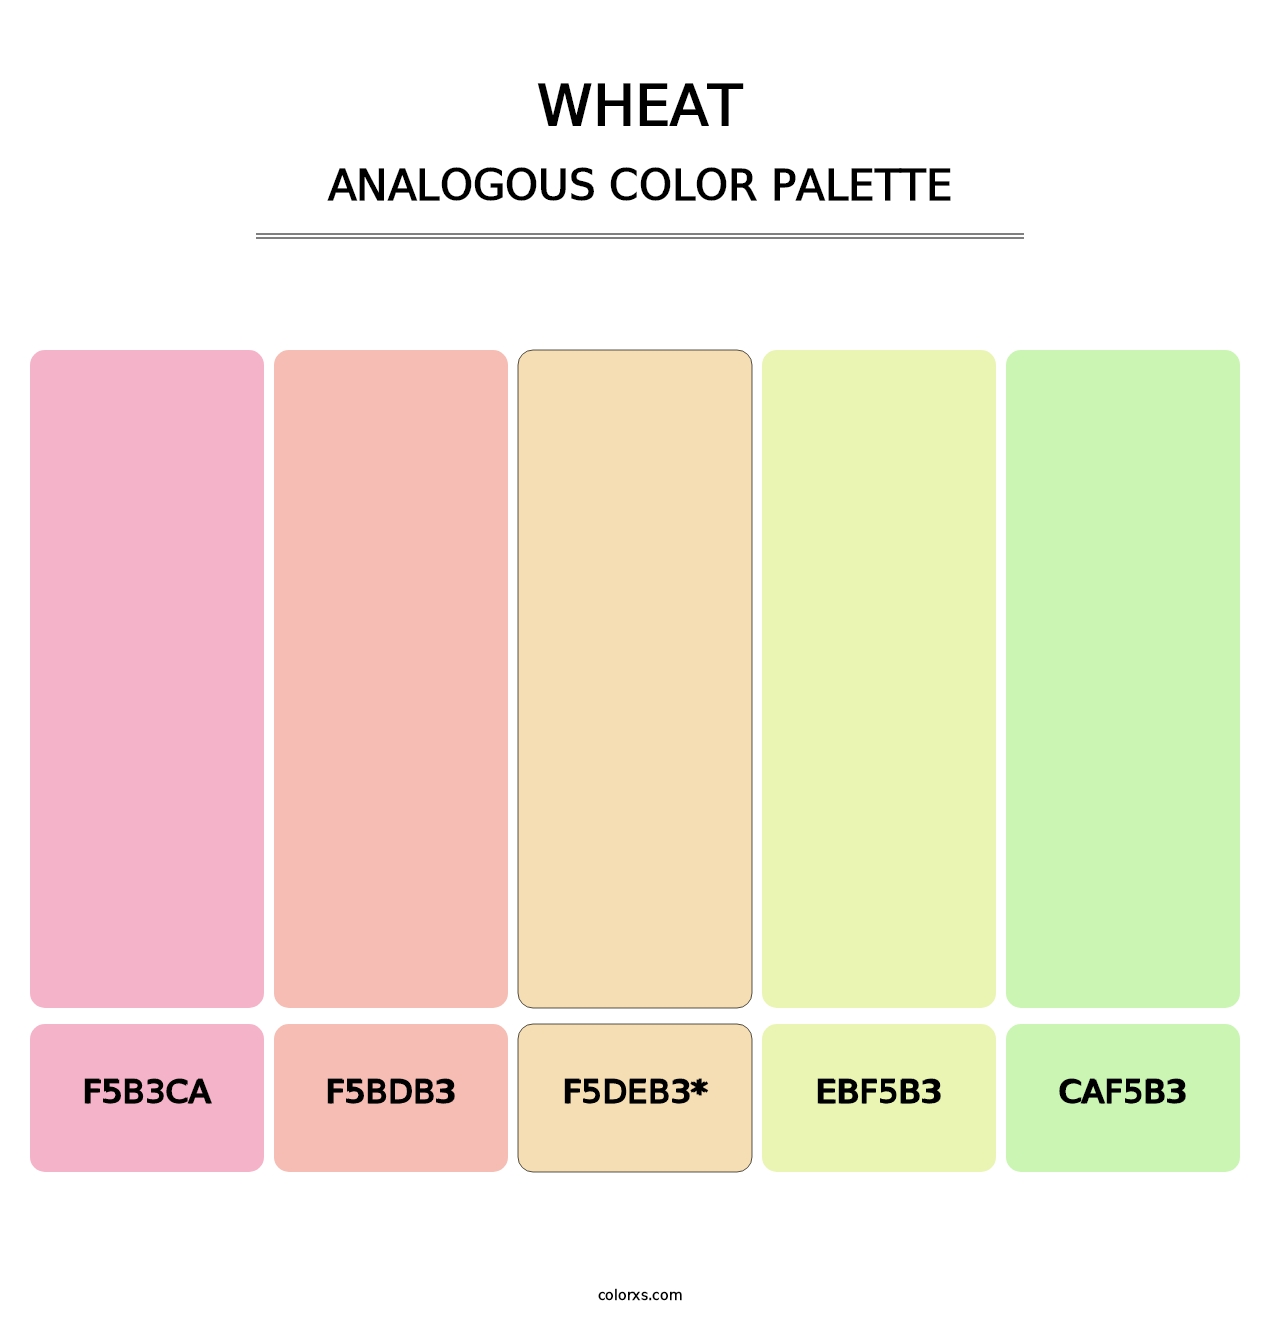 Wheat - Analogous Color Palette